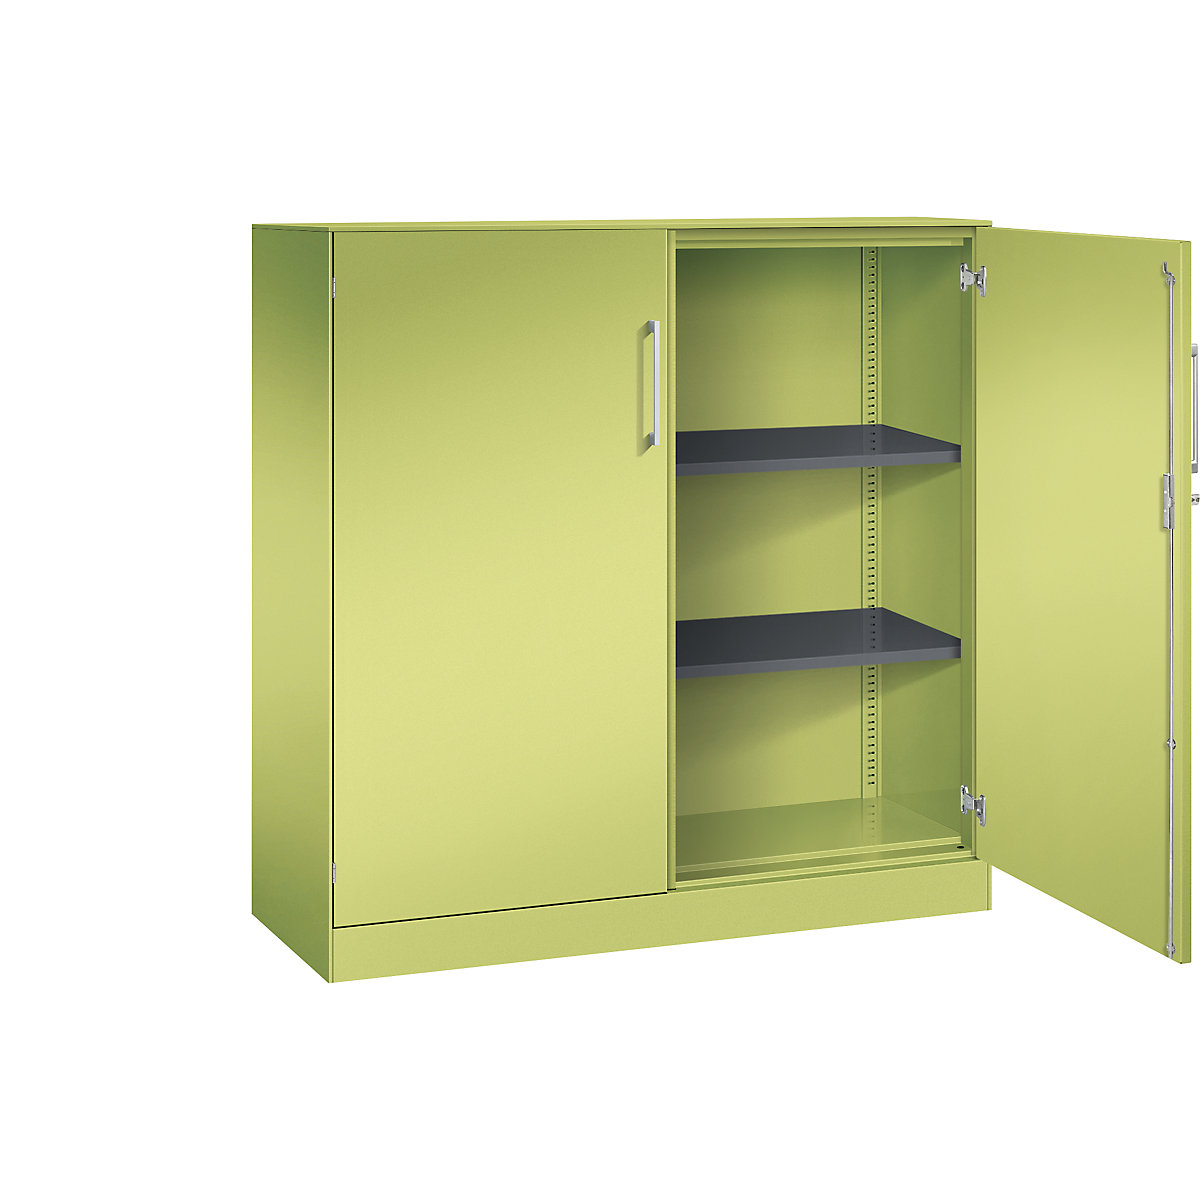 C+P – Skříň s otočnými dveřmi ASISTO, výška 1292 mm, šířka 1200 mm, 2 police, viridianová zelená/viridianová zelená